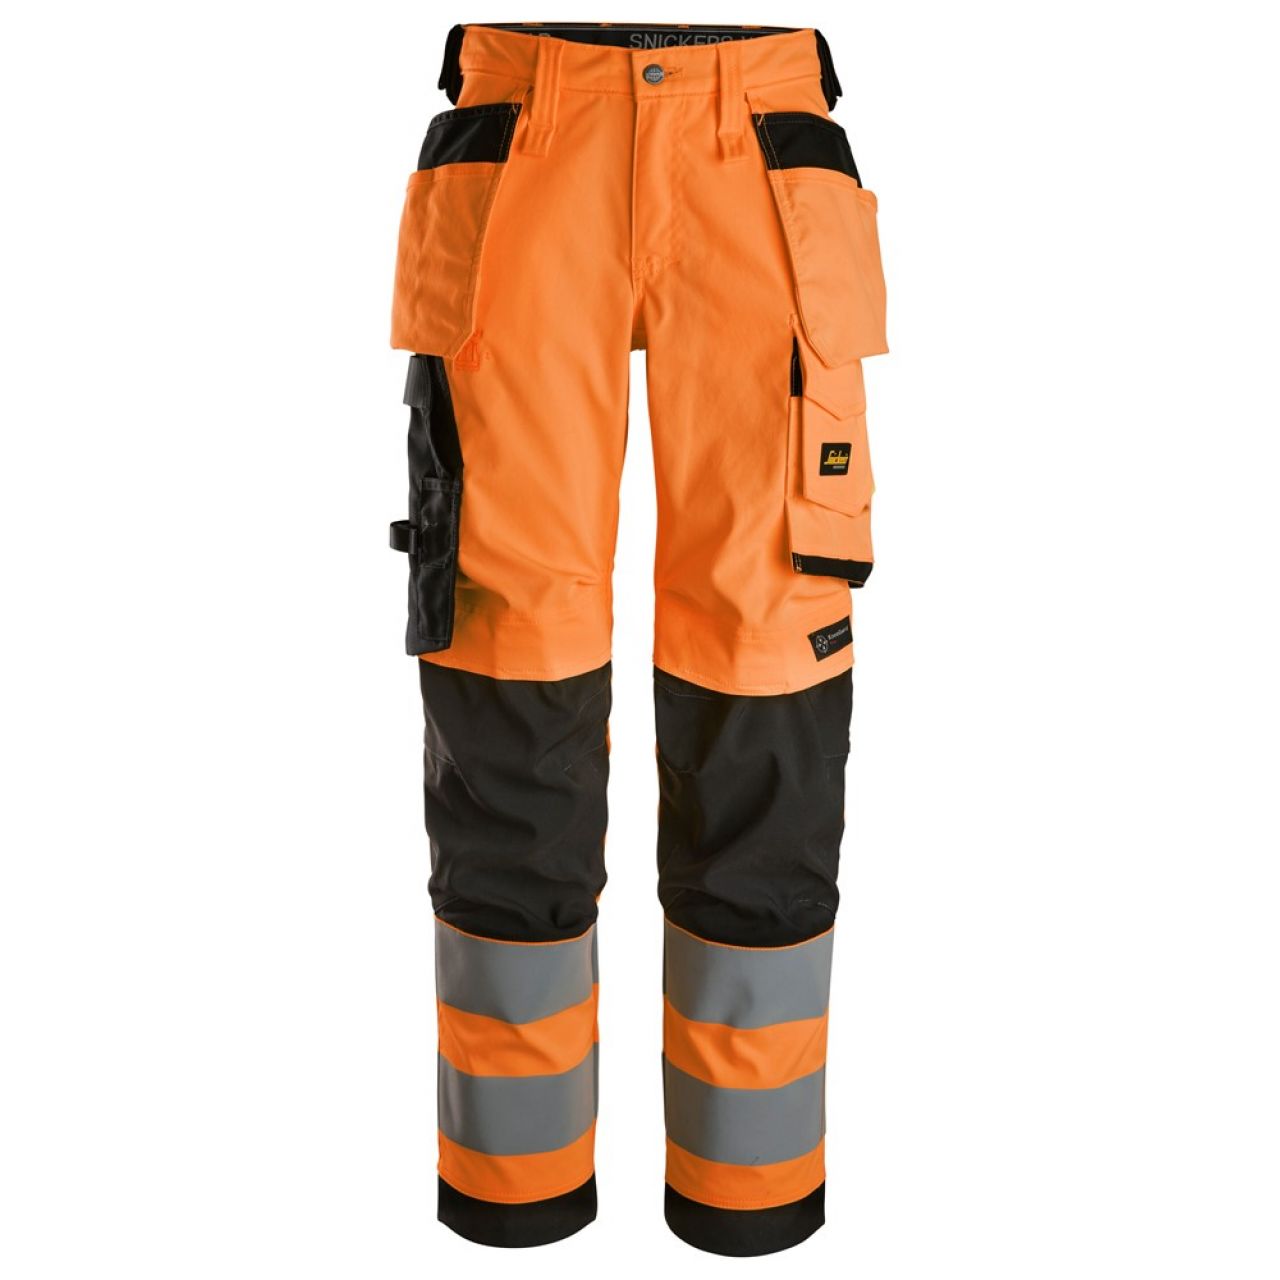 6743 Pantalones largos de trabajo elásticos de alta visibilidad clase 2 para mujer con bolsillos flotantes naranja-negro talla 19